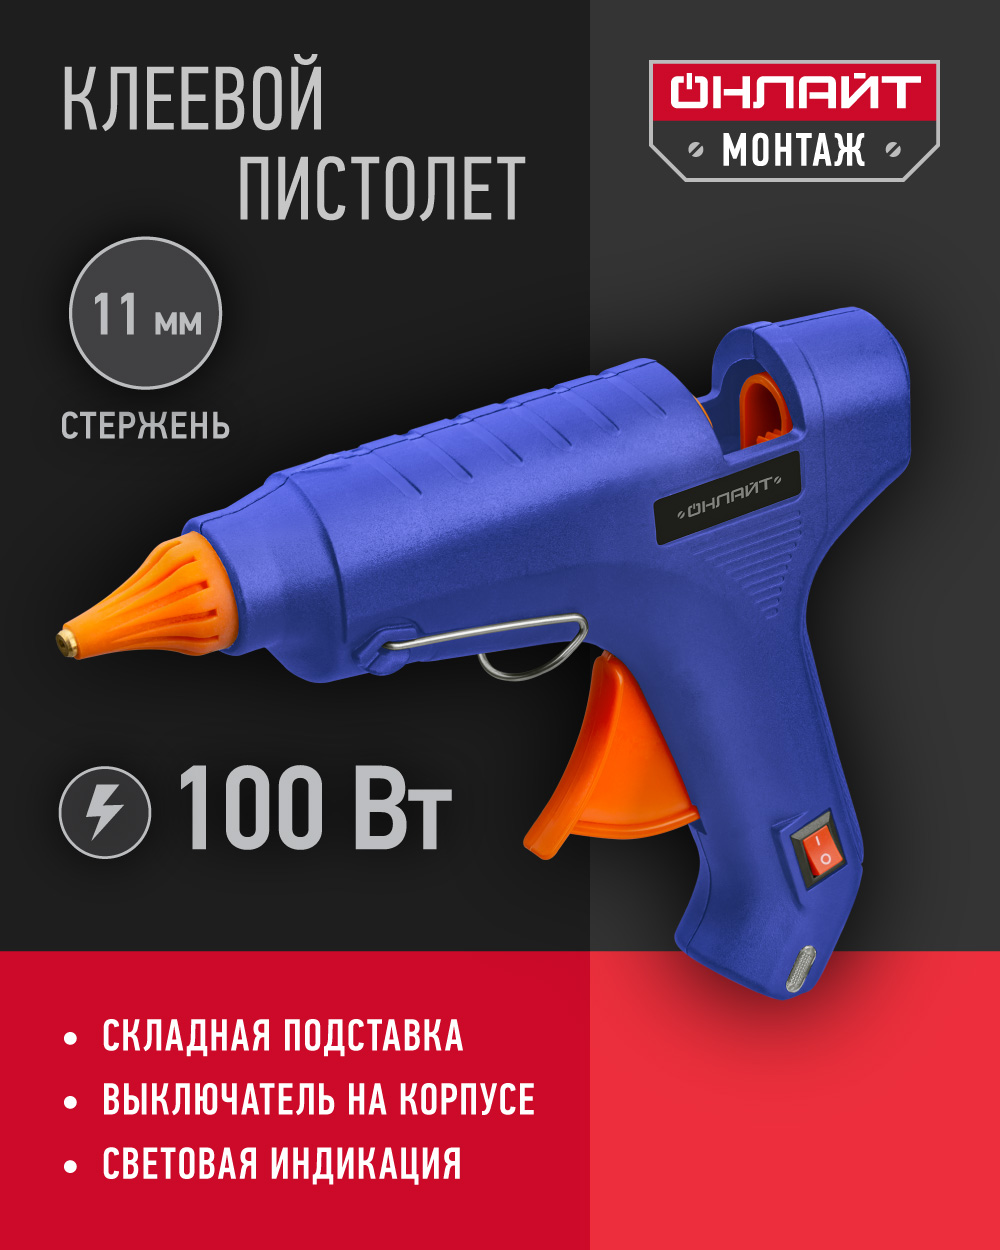 Клеевой пистолет профессиональный ОНЛАЙТ 90 088, 100 Вт, 11 мм, синий двухрежимный клеевой пистолет rexant